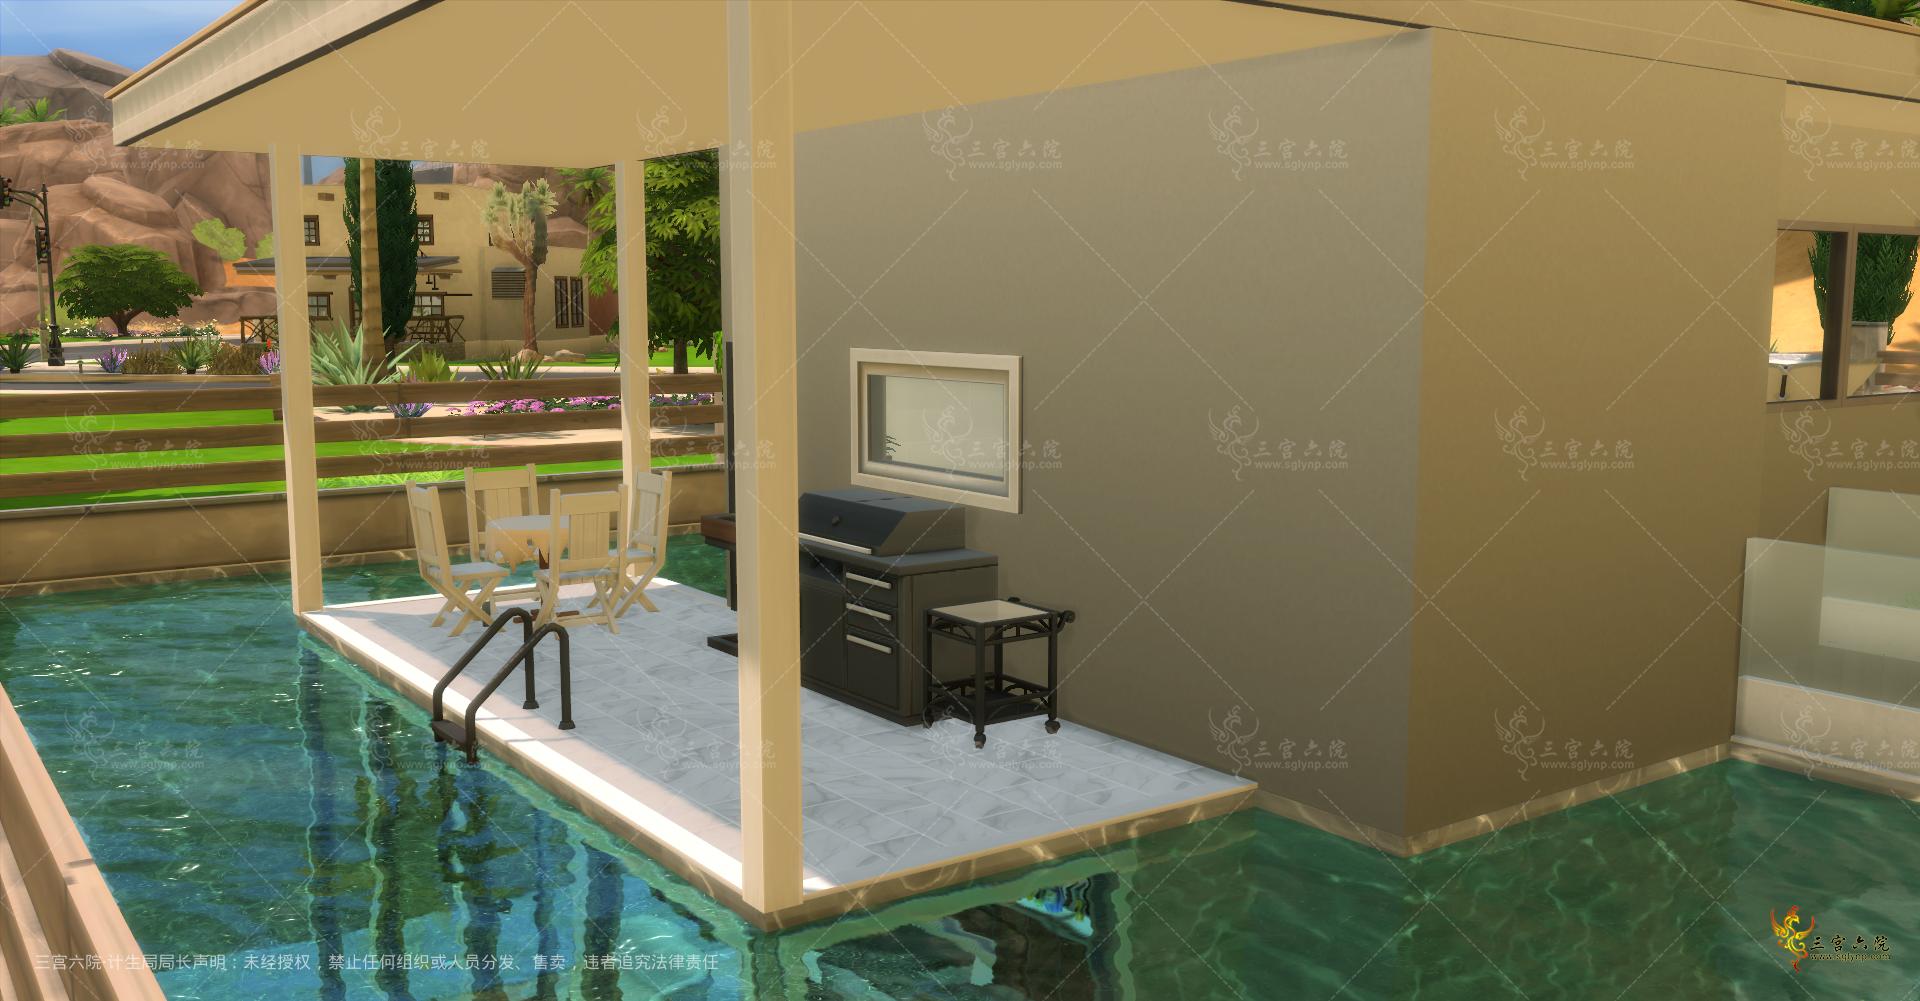 Sims 4 Screenshot 2021.11.22 - 22.00.42.32.png